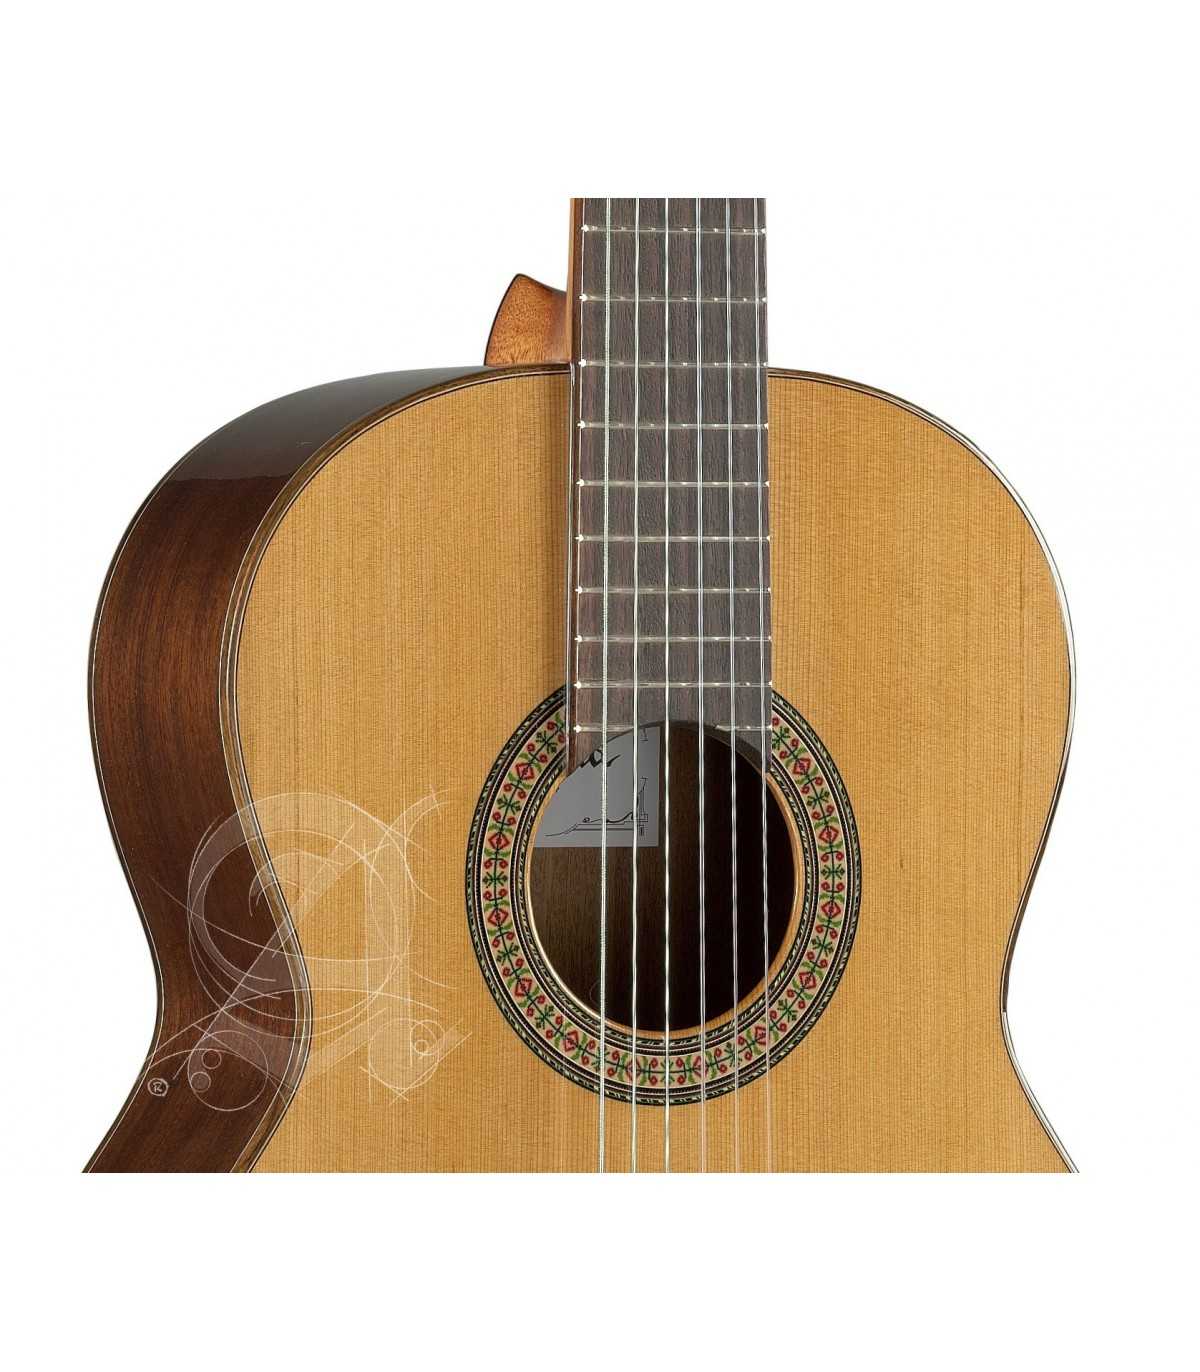 Instruments: Housse guitare classique 3/4